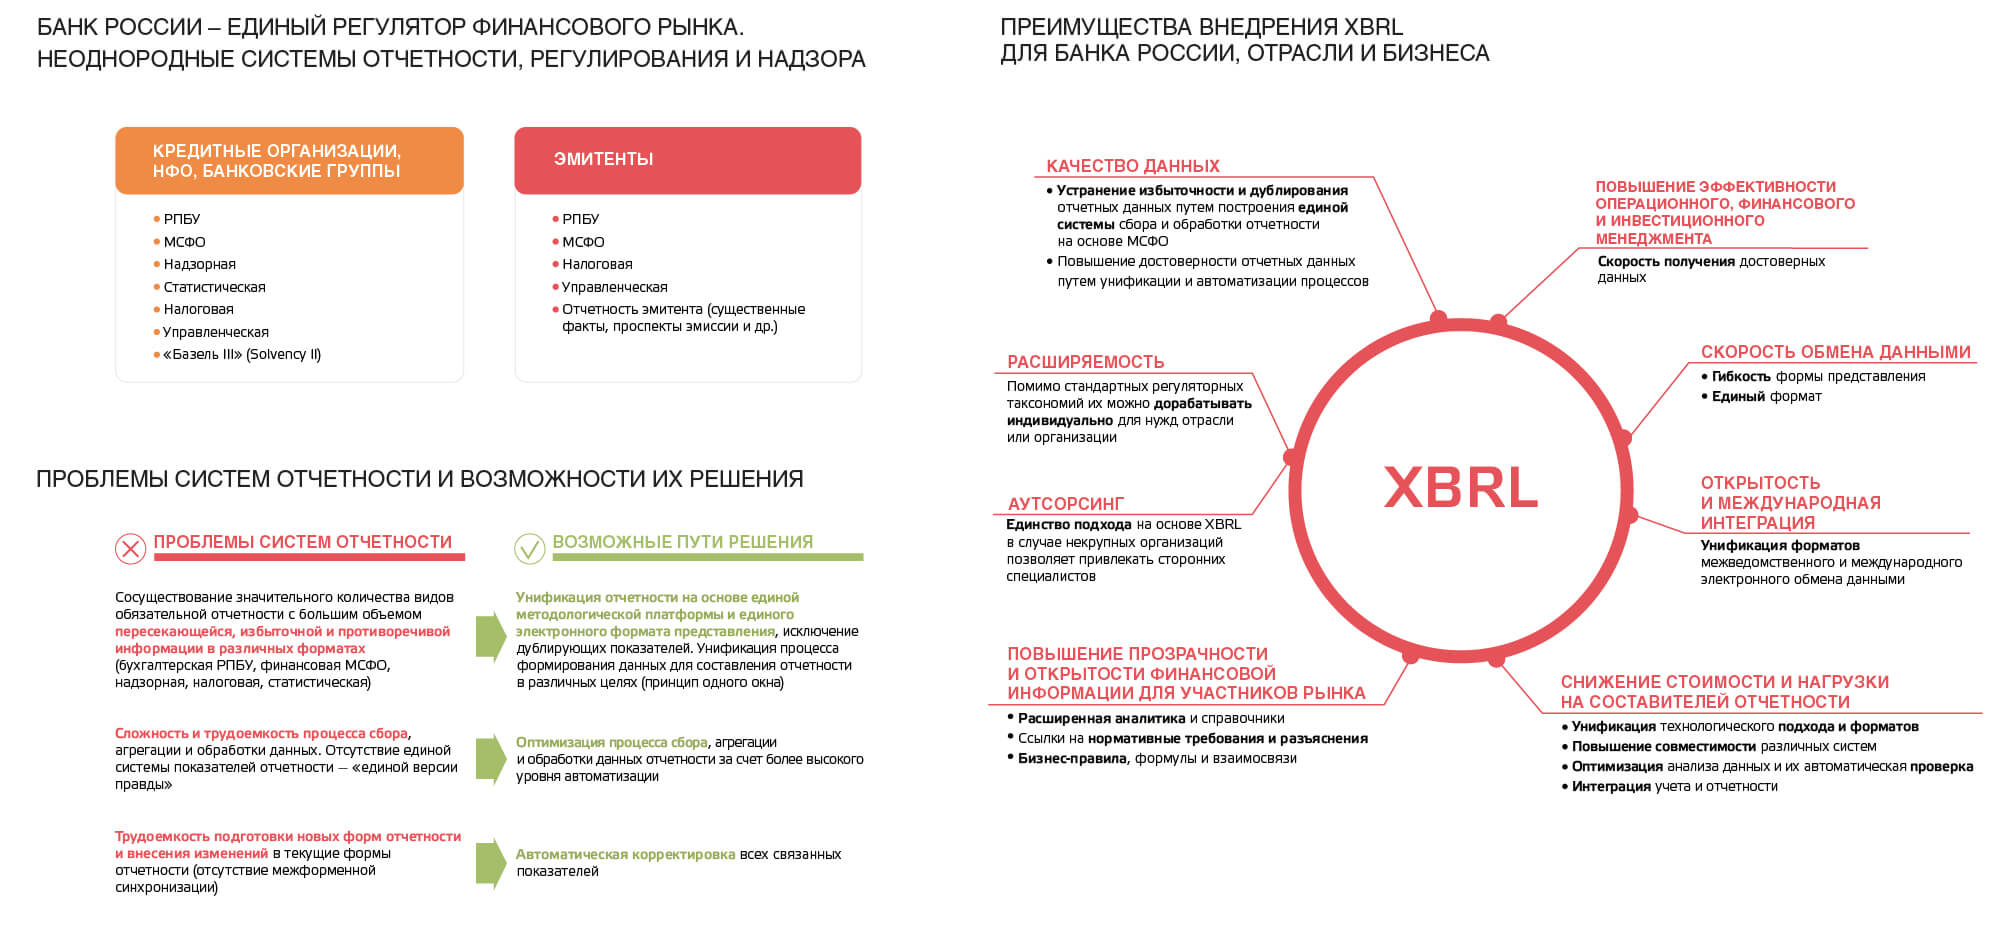 Финансовая информация тесты. Проект XBRL. XBRL банк России. Некредитные организации. Банк России отчетность.